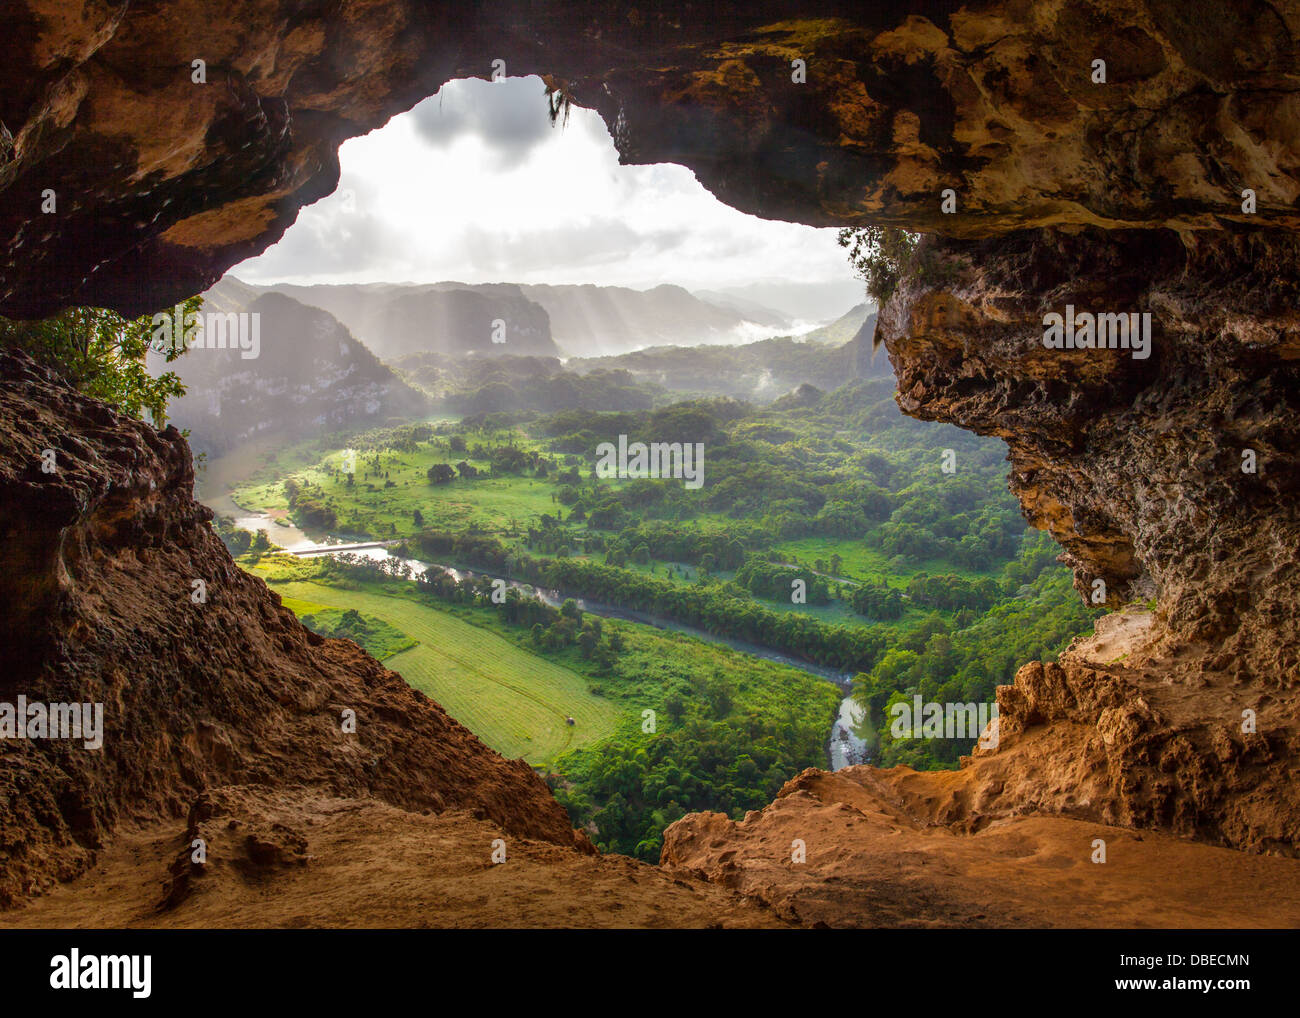 View from Inside the Cueva Ventana (Window Cave) Near Arecibo, Puerto Rico Stock Photo